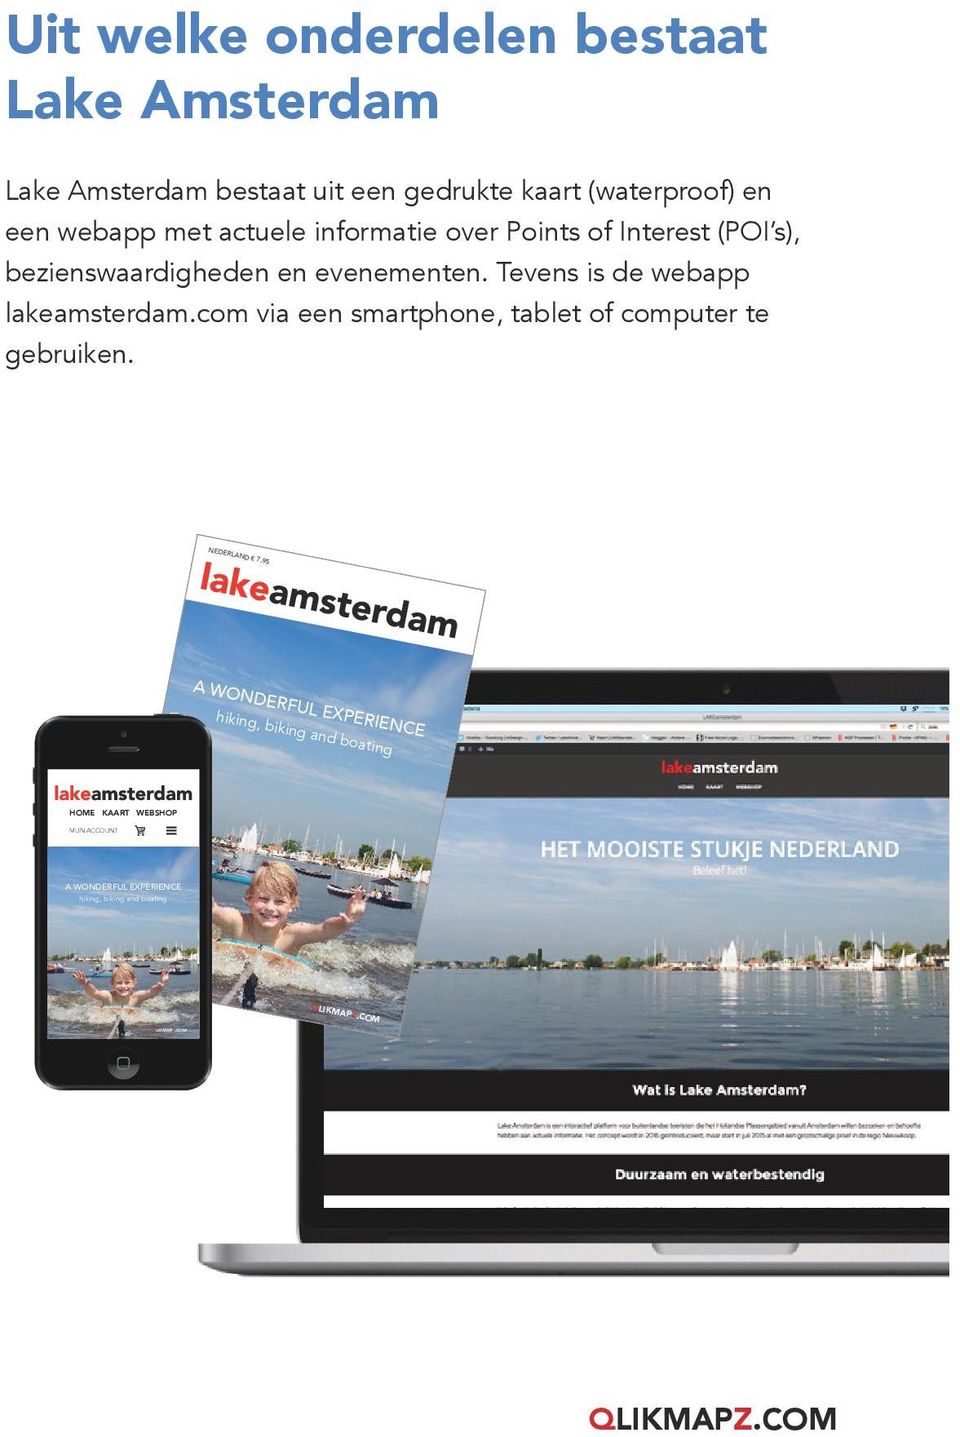 evenementen. Tevens is de webapp lakeamsterdam.com via een smartphone, tablet of computer te gebruiken.